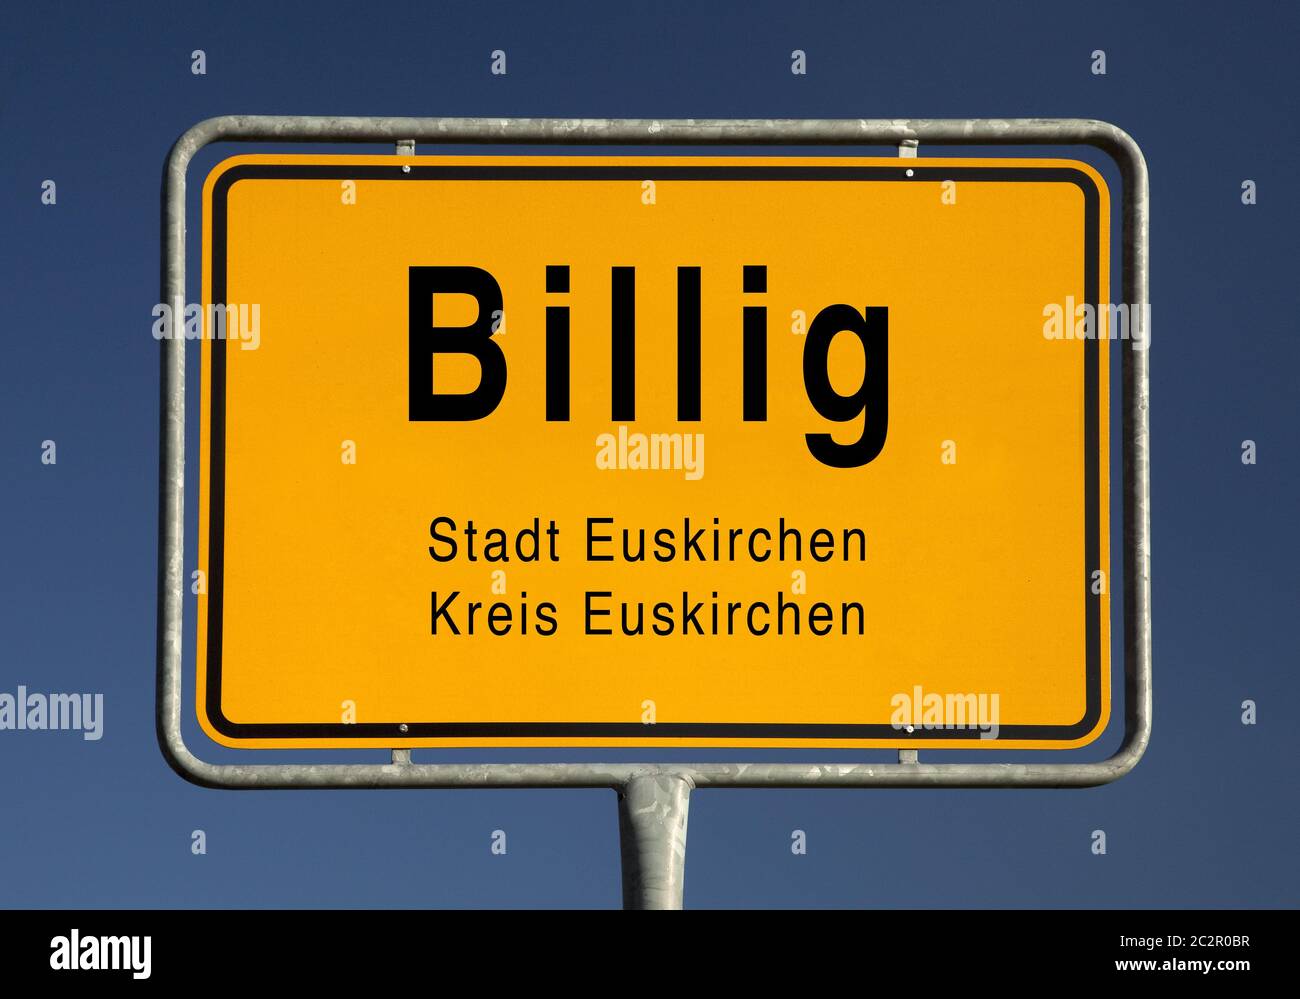 City entrance sign of Billig, suburb of the city Euskirchen, North  Rhine-Westphalia, Germany, Europe Stock Photo - Alamy